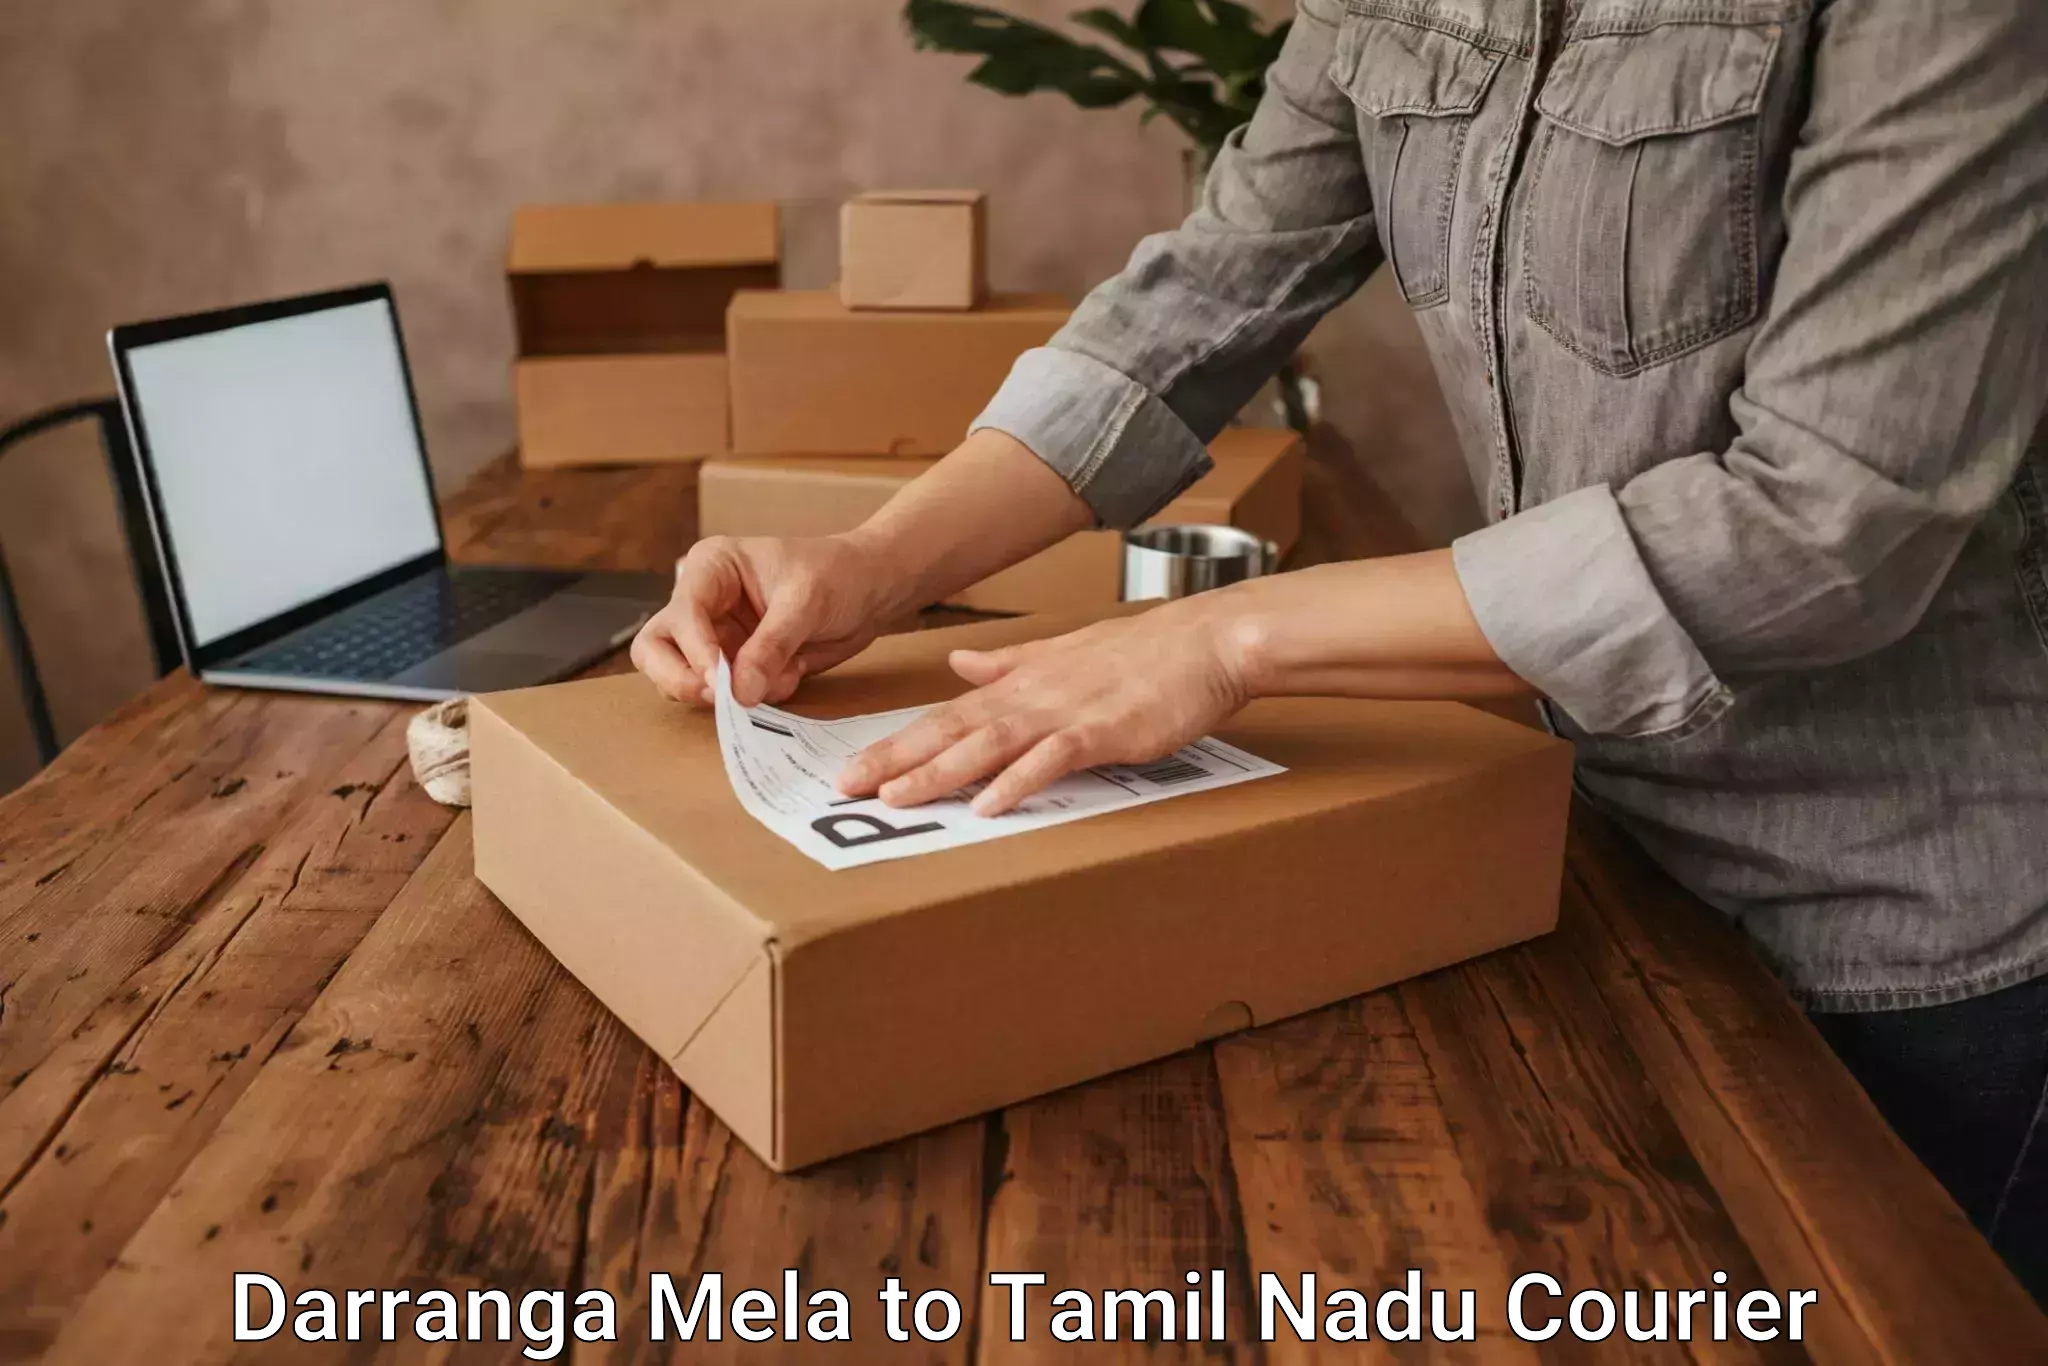 Door-to-door freight service Darranga Mela to Tamil Nadu